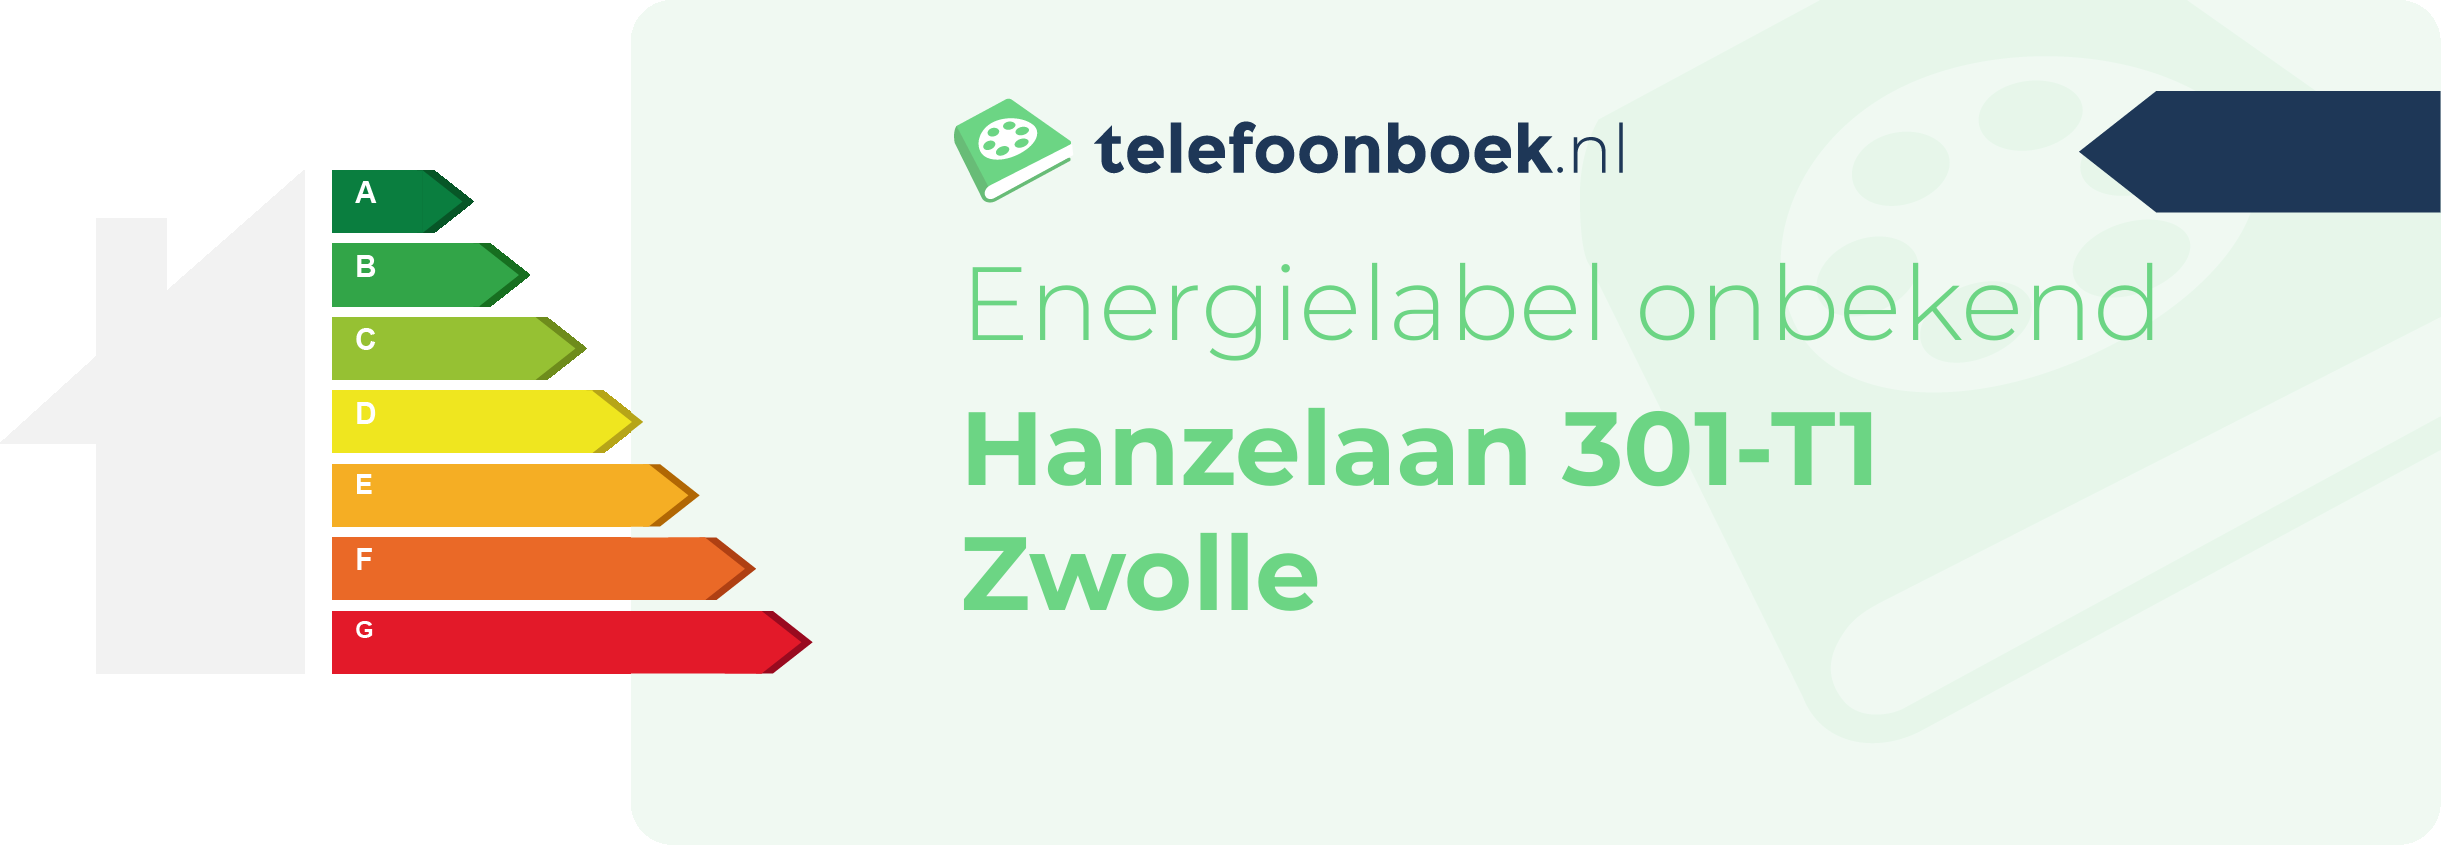 Energielabel Hanzelaan 301-T1 Zwolle